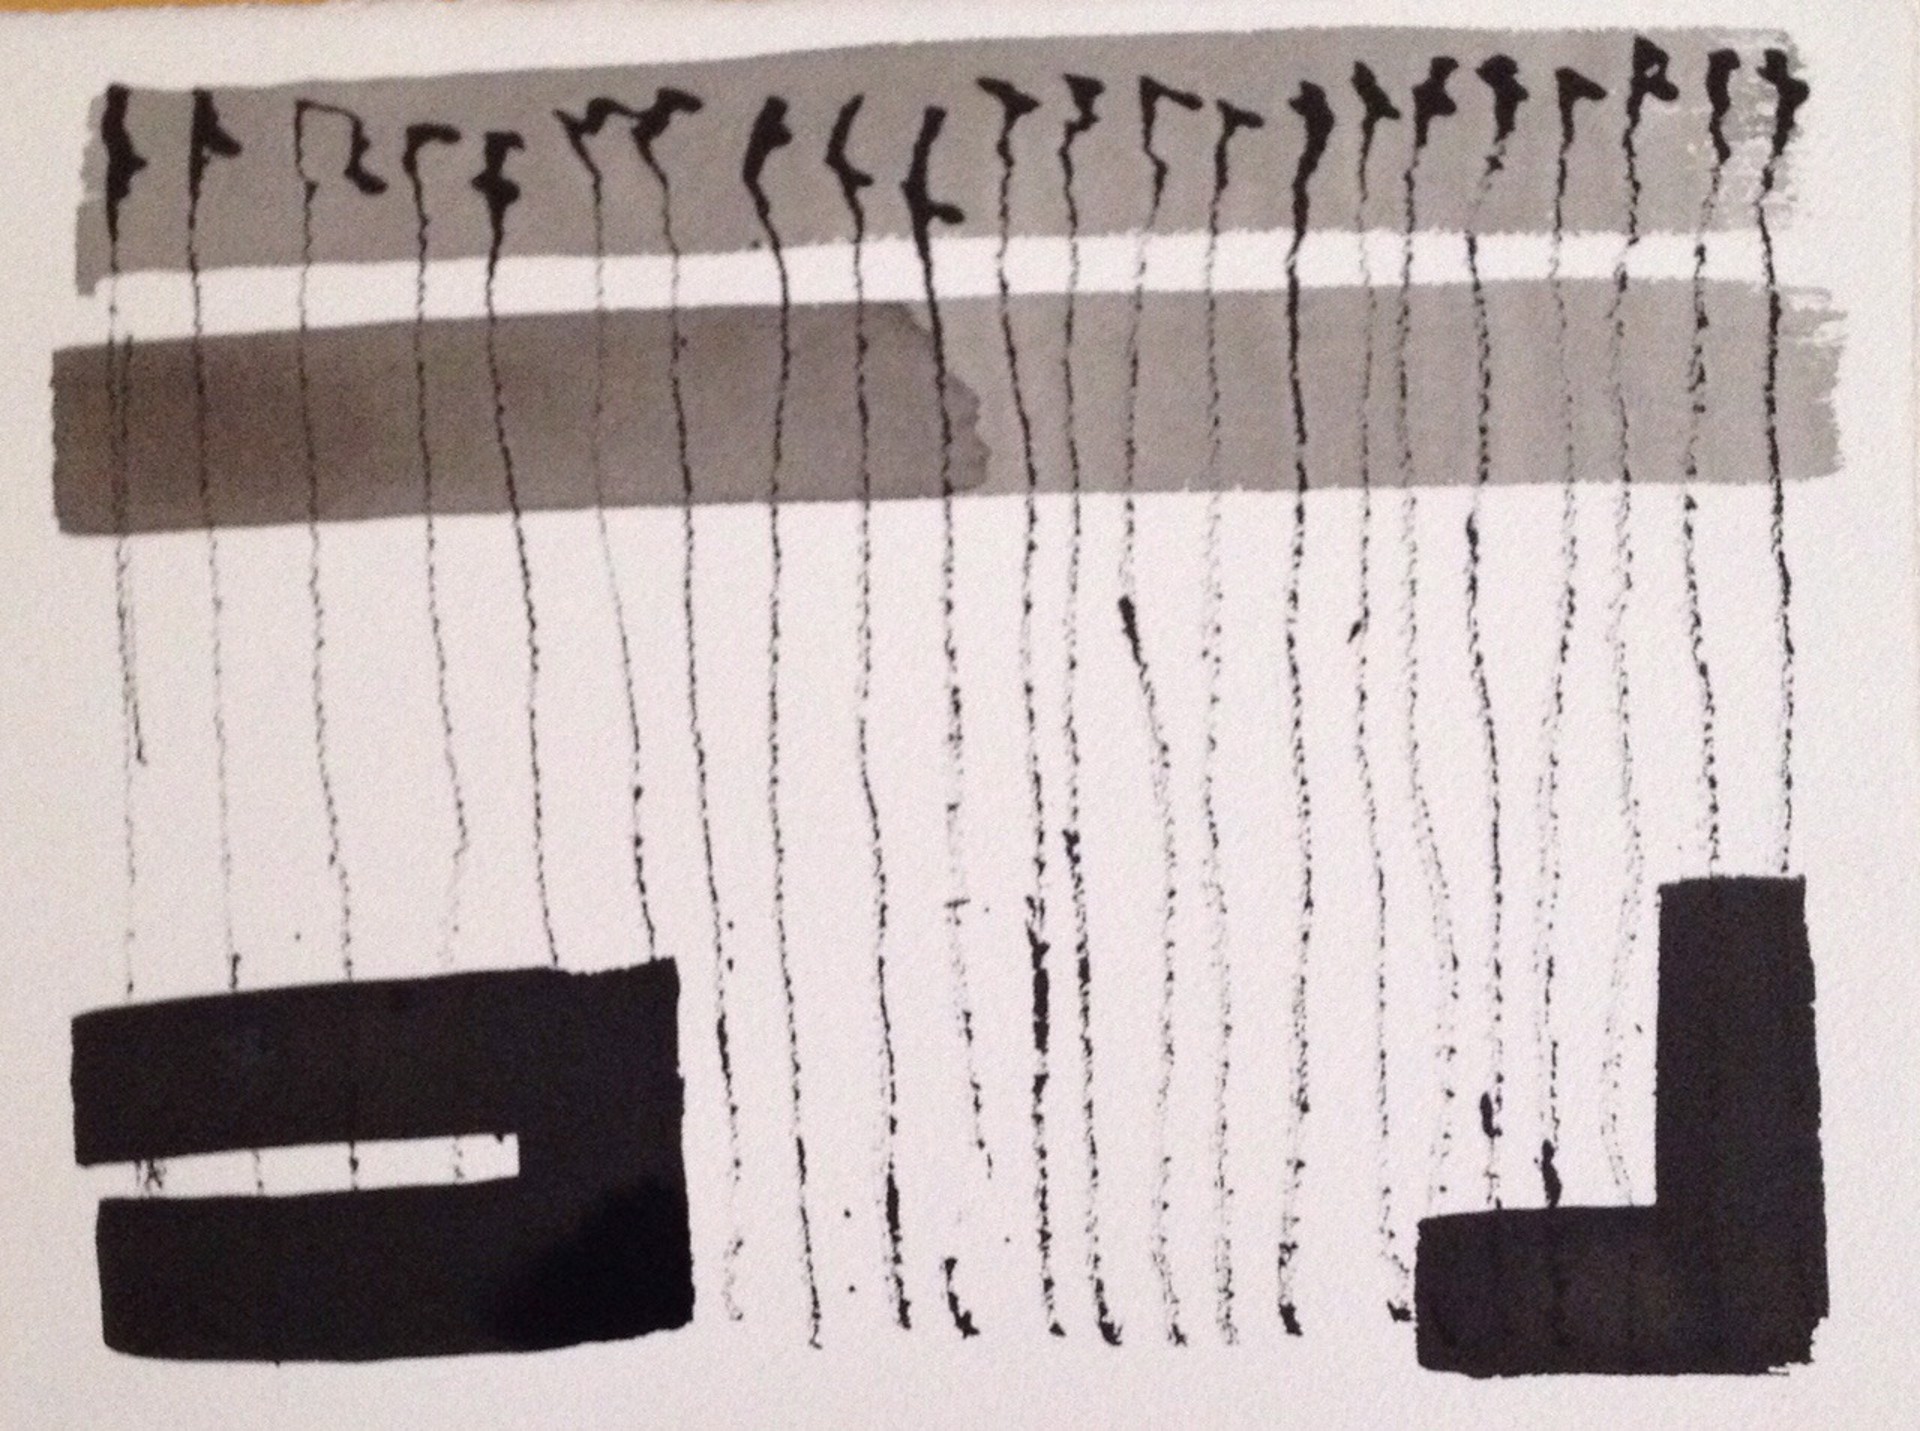 Abstract no.1, 2015 by John Goodman